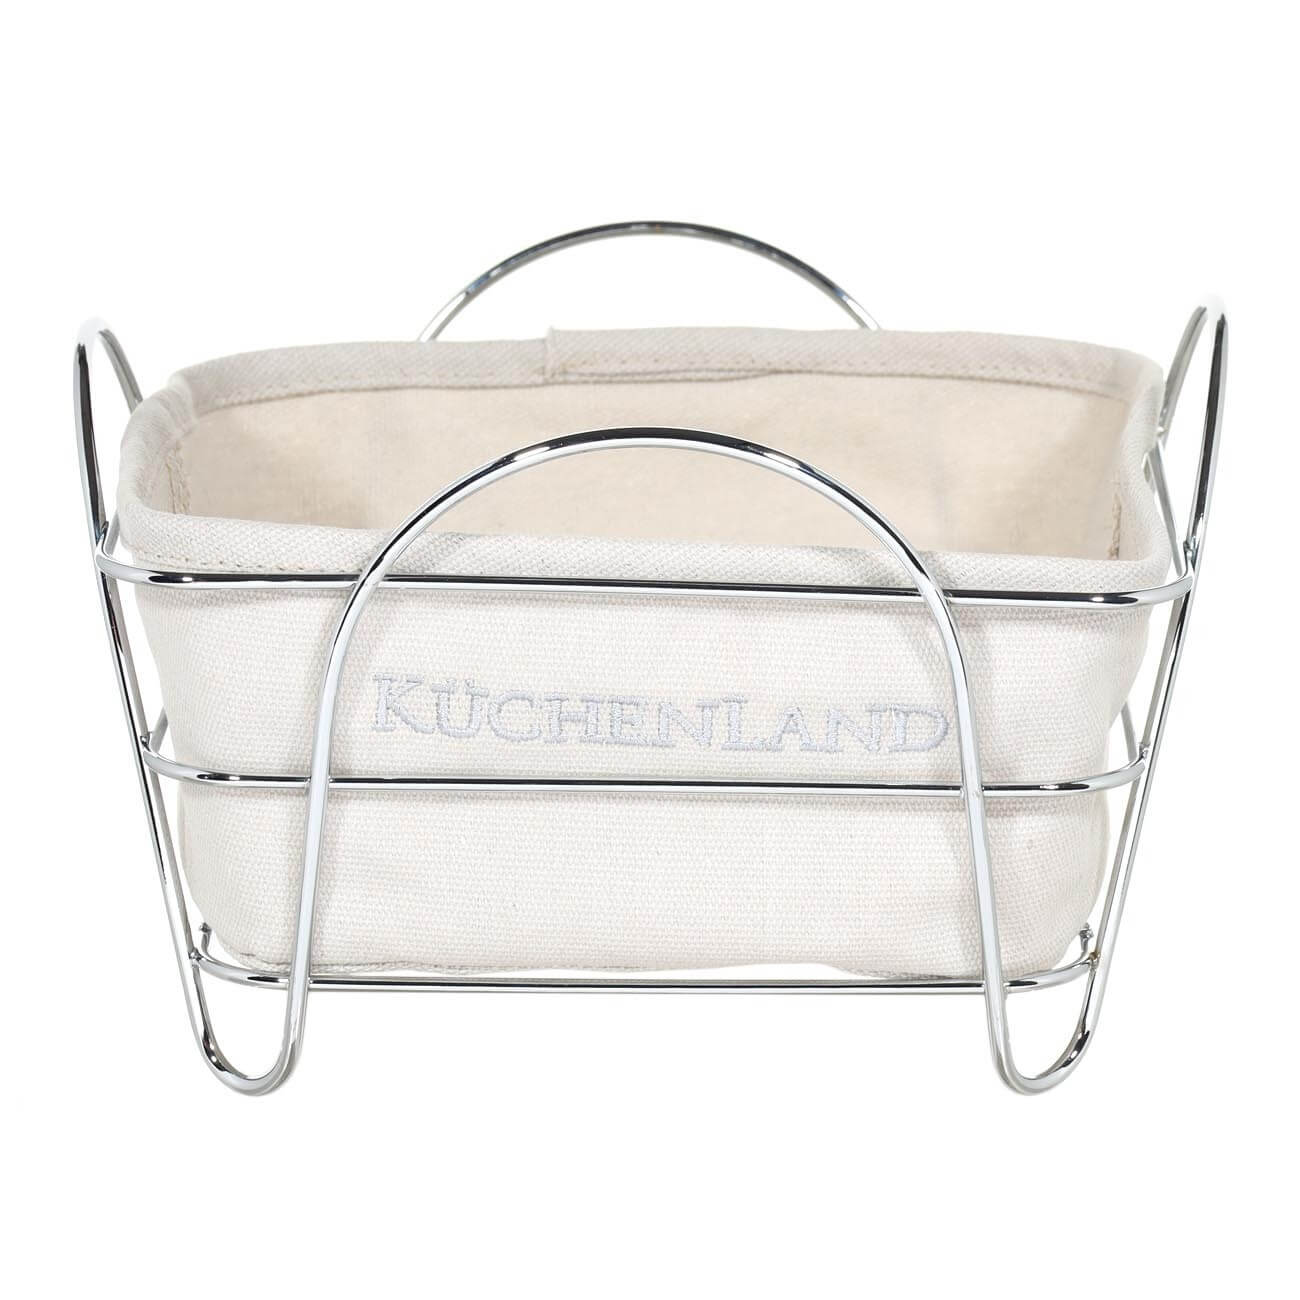 Bread basket, 21x21 cm, cotton/metal, square, Grey/silver, Twist silver изображение № 1